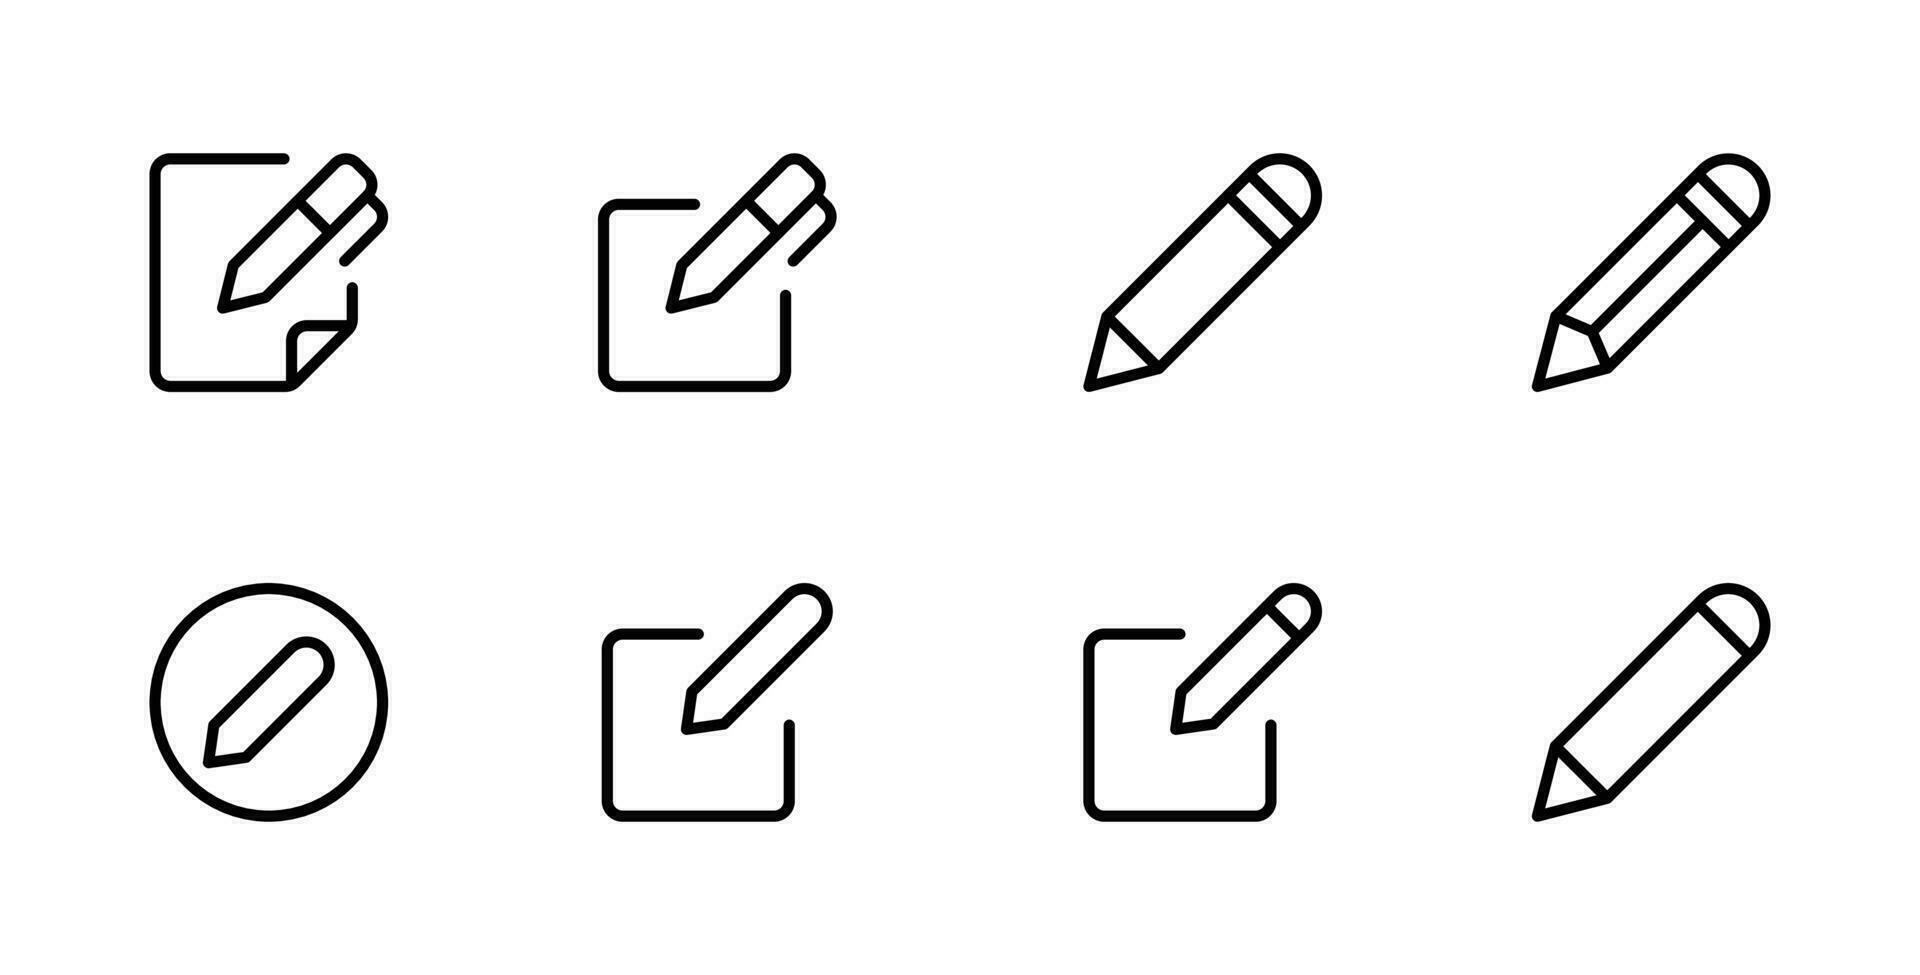 bloc editar bolígrafo icono, crear modificar bolígrafo firmar botón, lápiz icono, firmar arriba icono - edición texto archivo documento iconos escritura Nota símbolo vector ilustración.